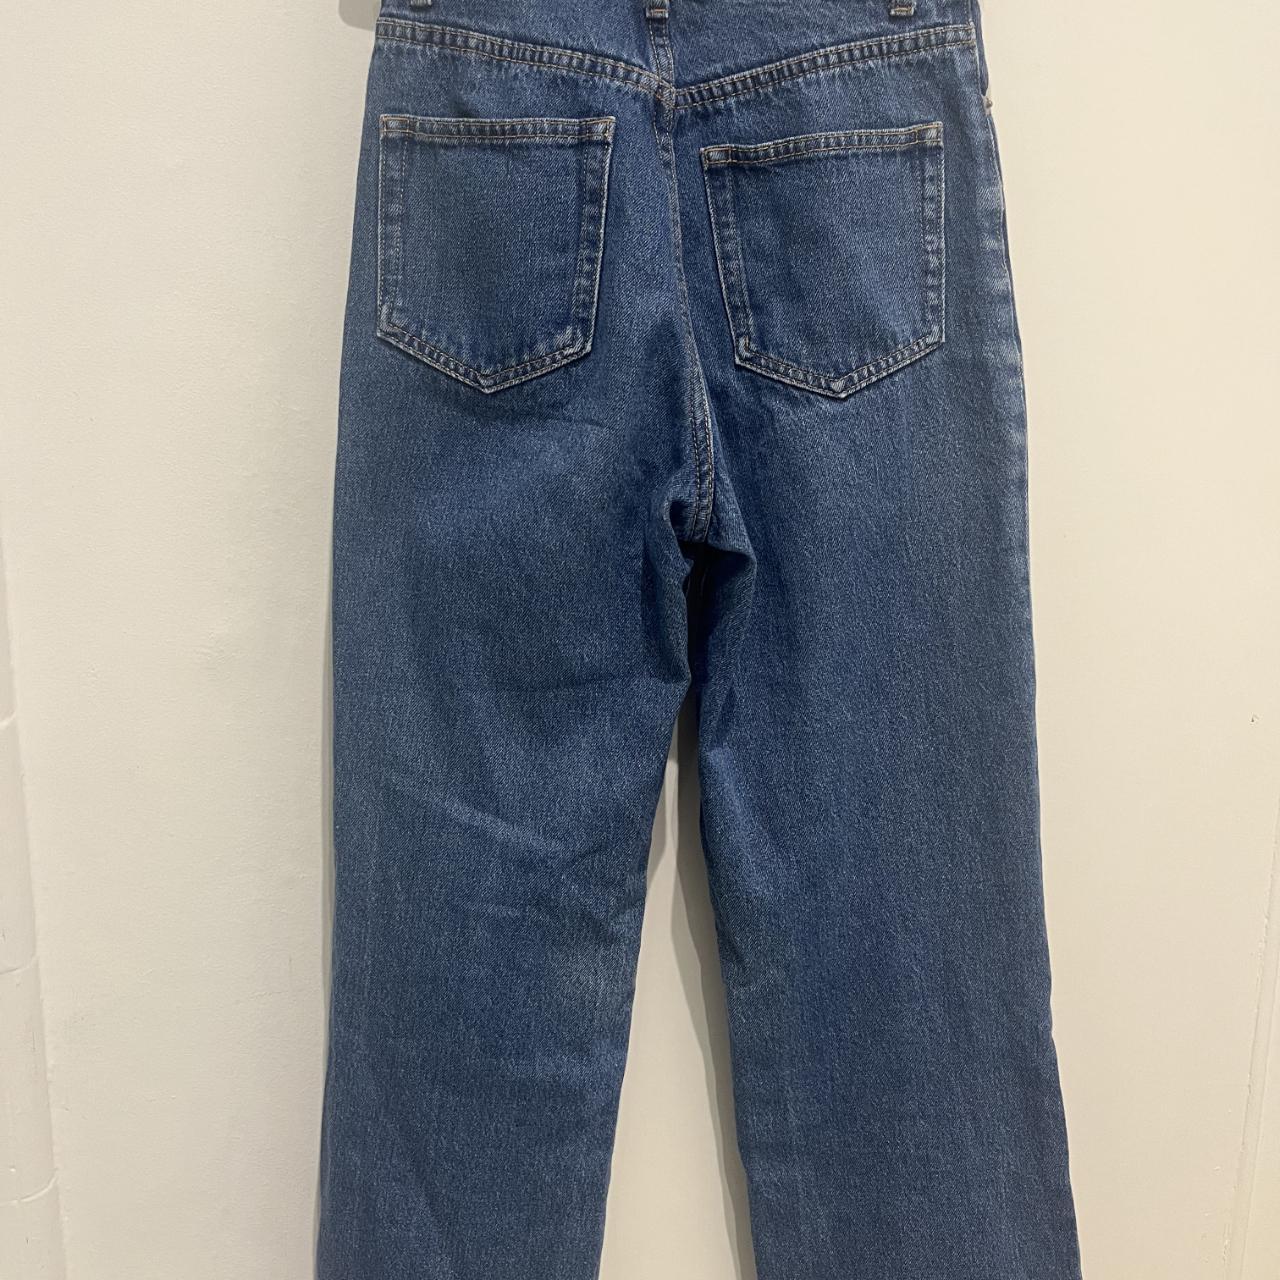 Blue wide-legged jeans - Depop